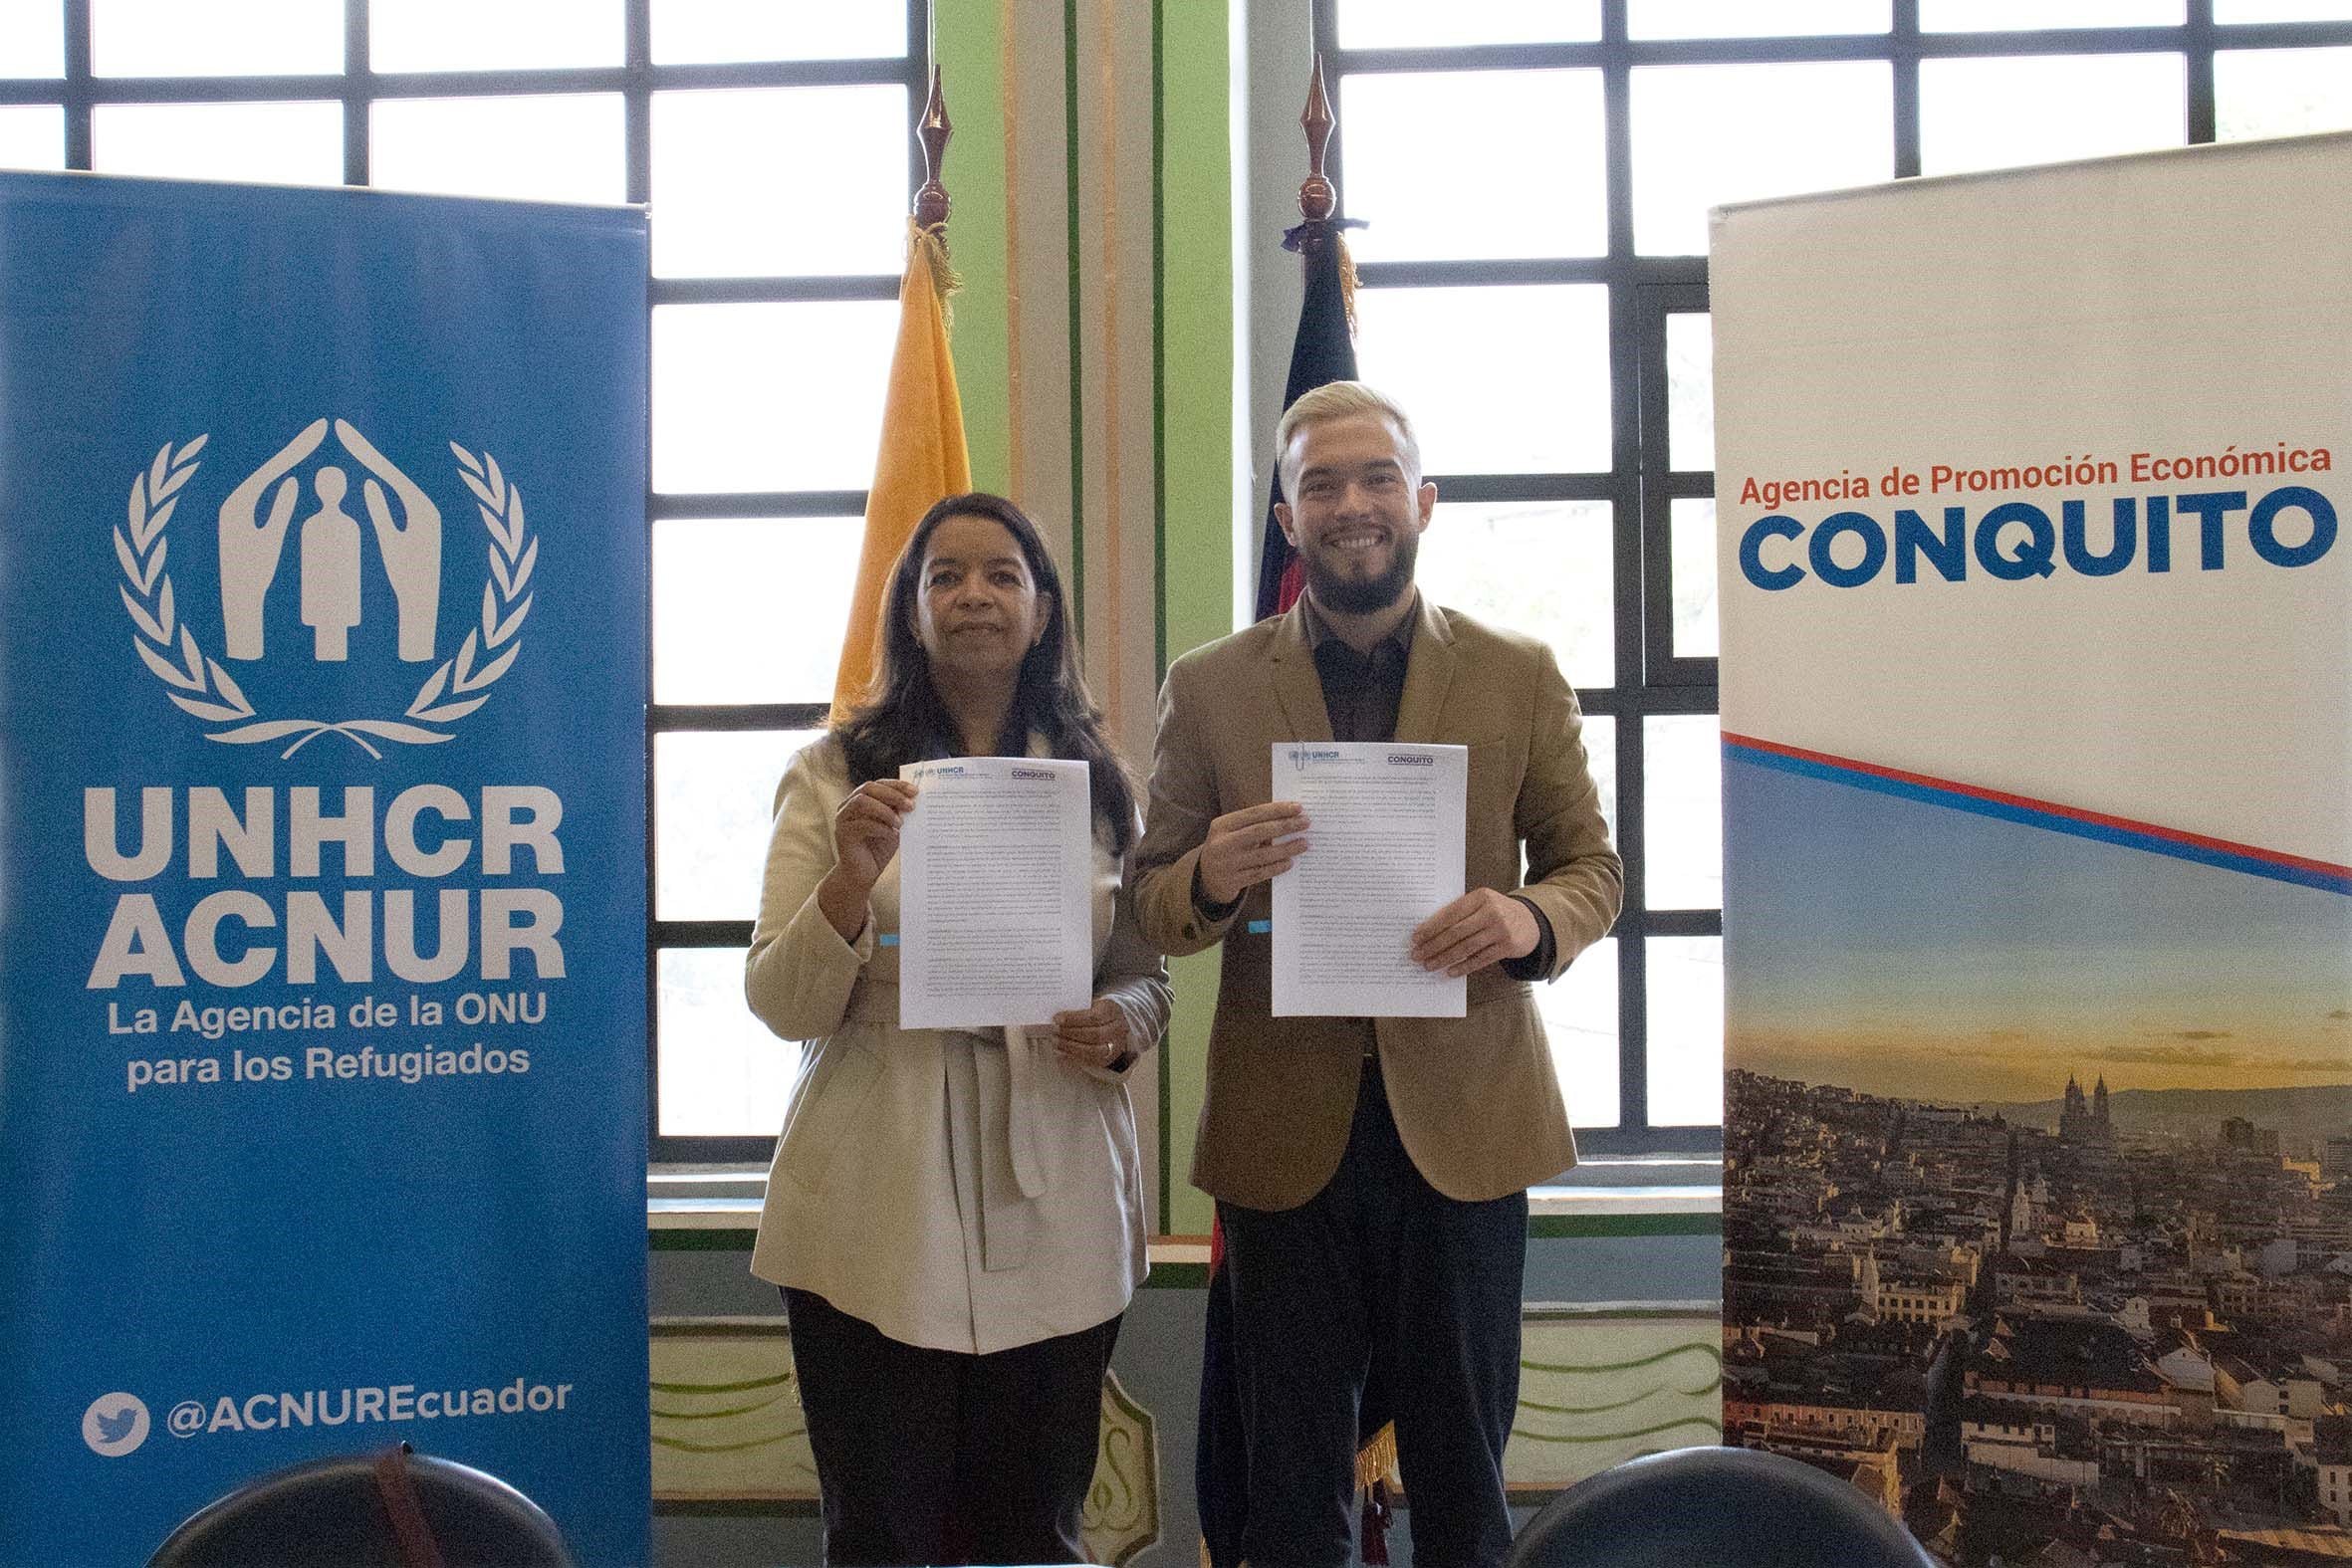 Acnur Ecuador y ConQuito suscribieron alianza para trabajar por inclusión económica de población refugiada